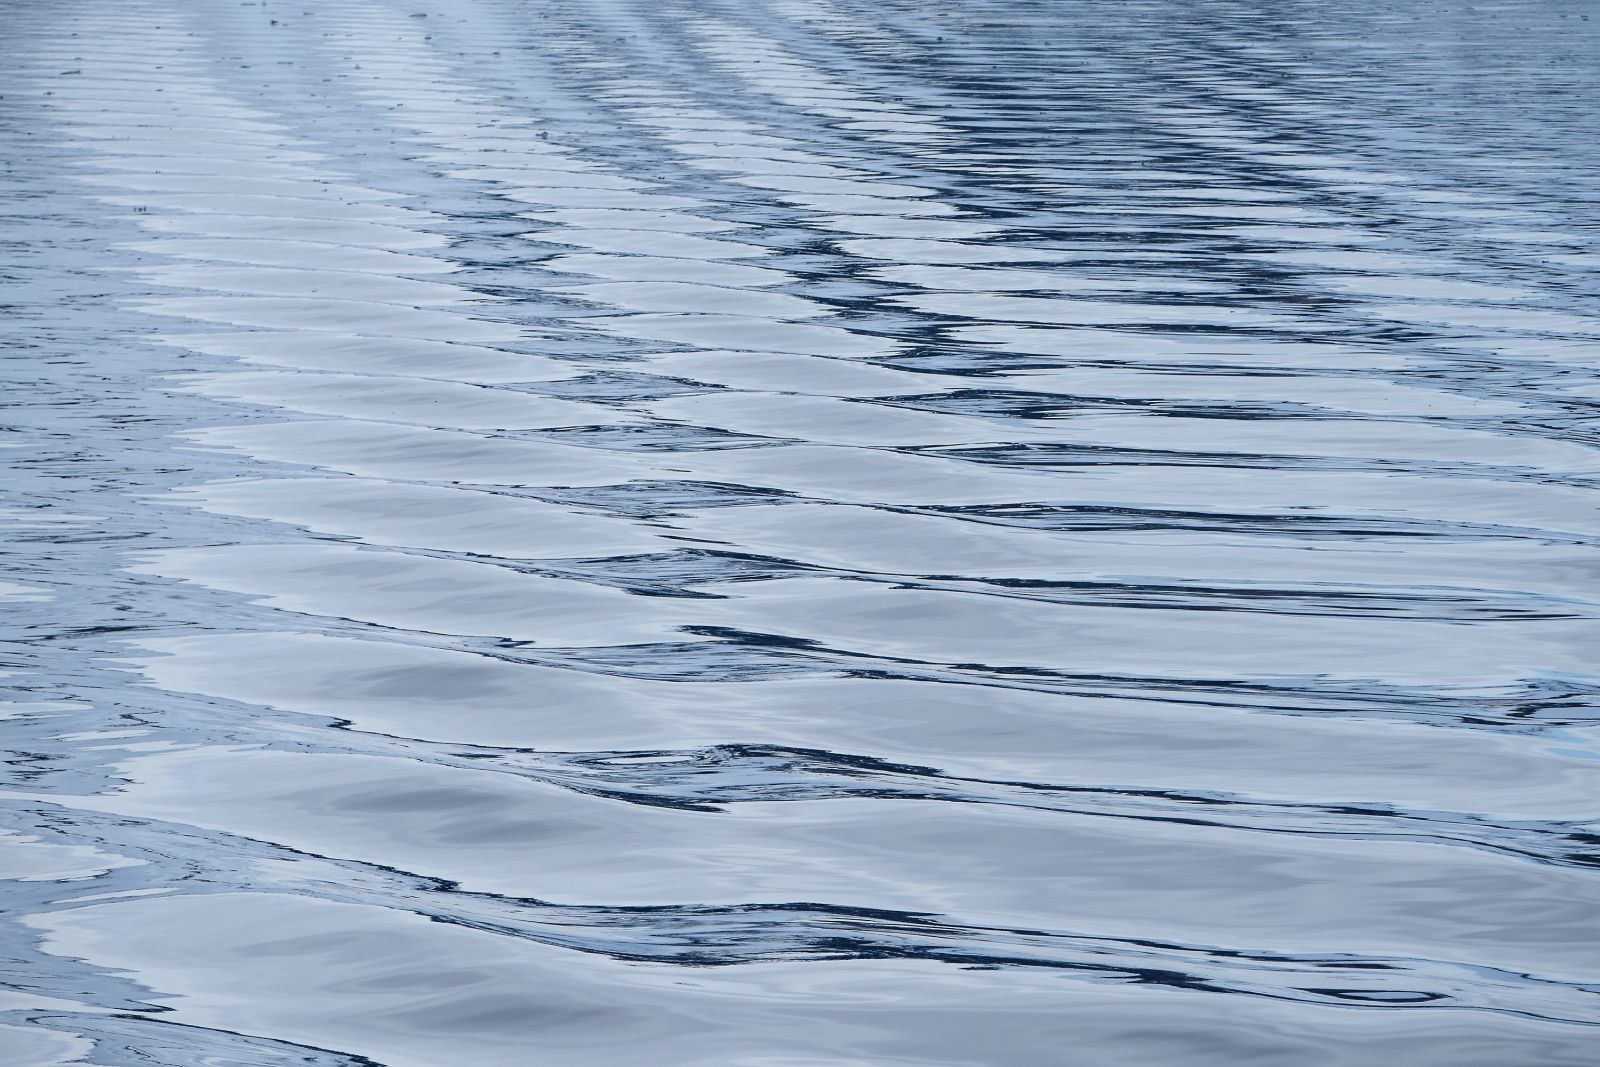 Spitzbergen abstrakt: Berge, Eis und Himmel spiegeln sich in den Wellen